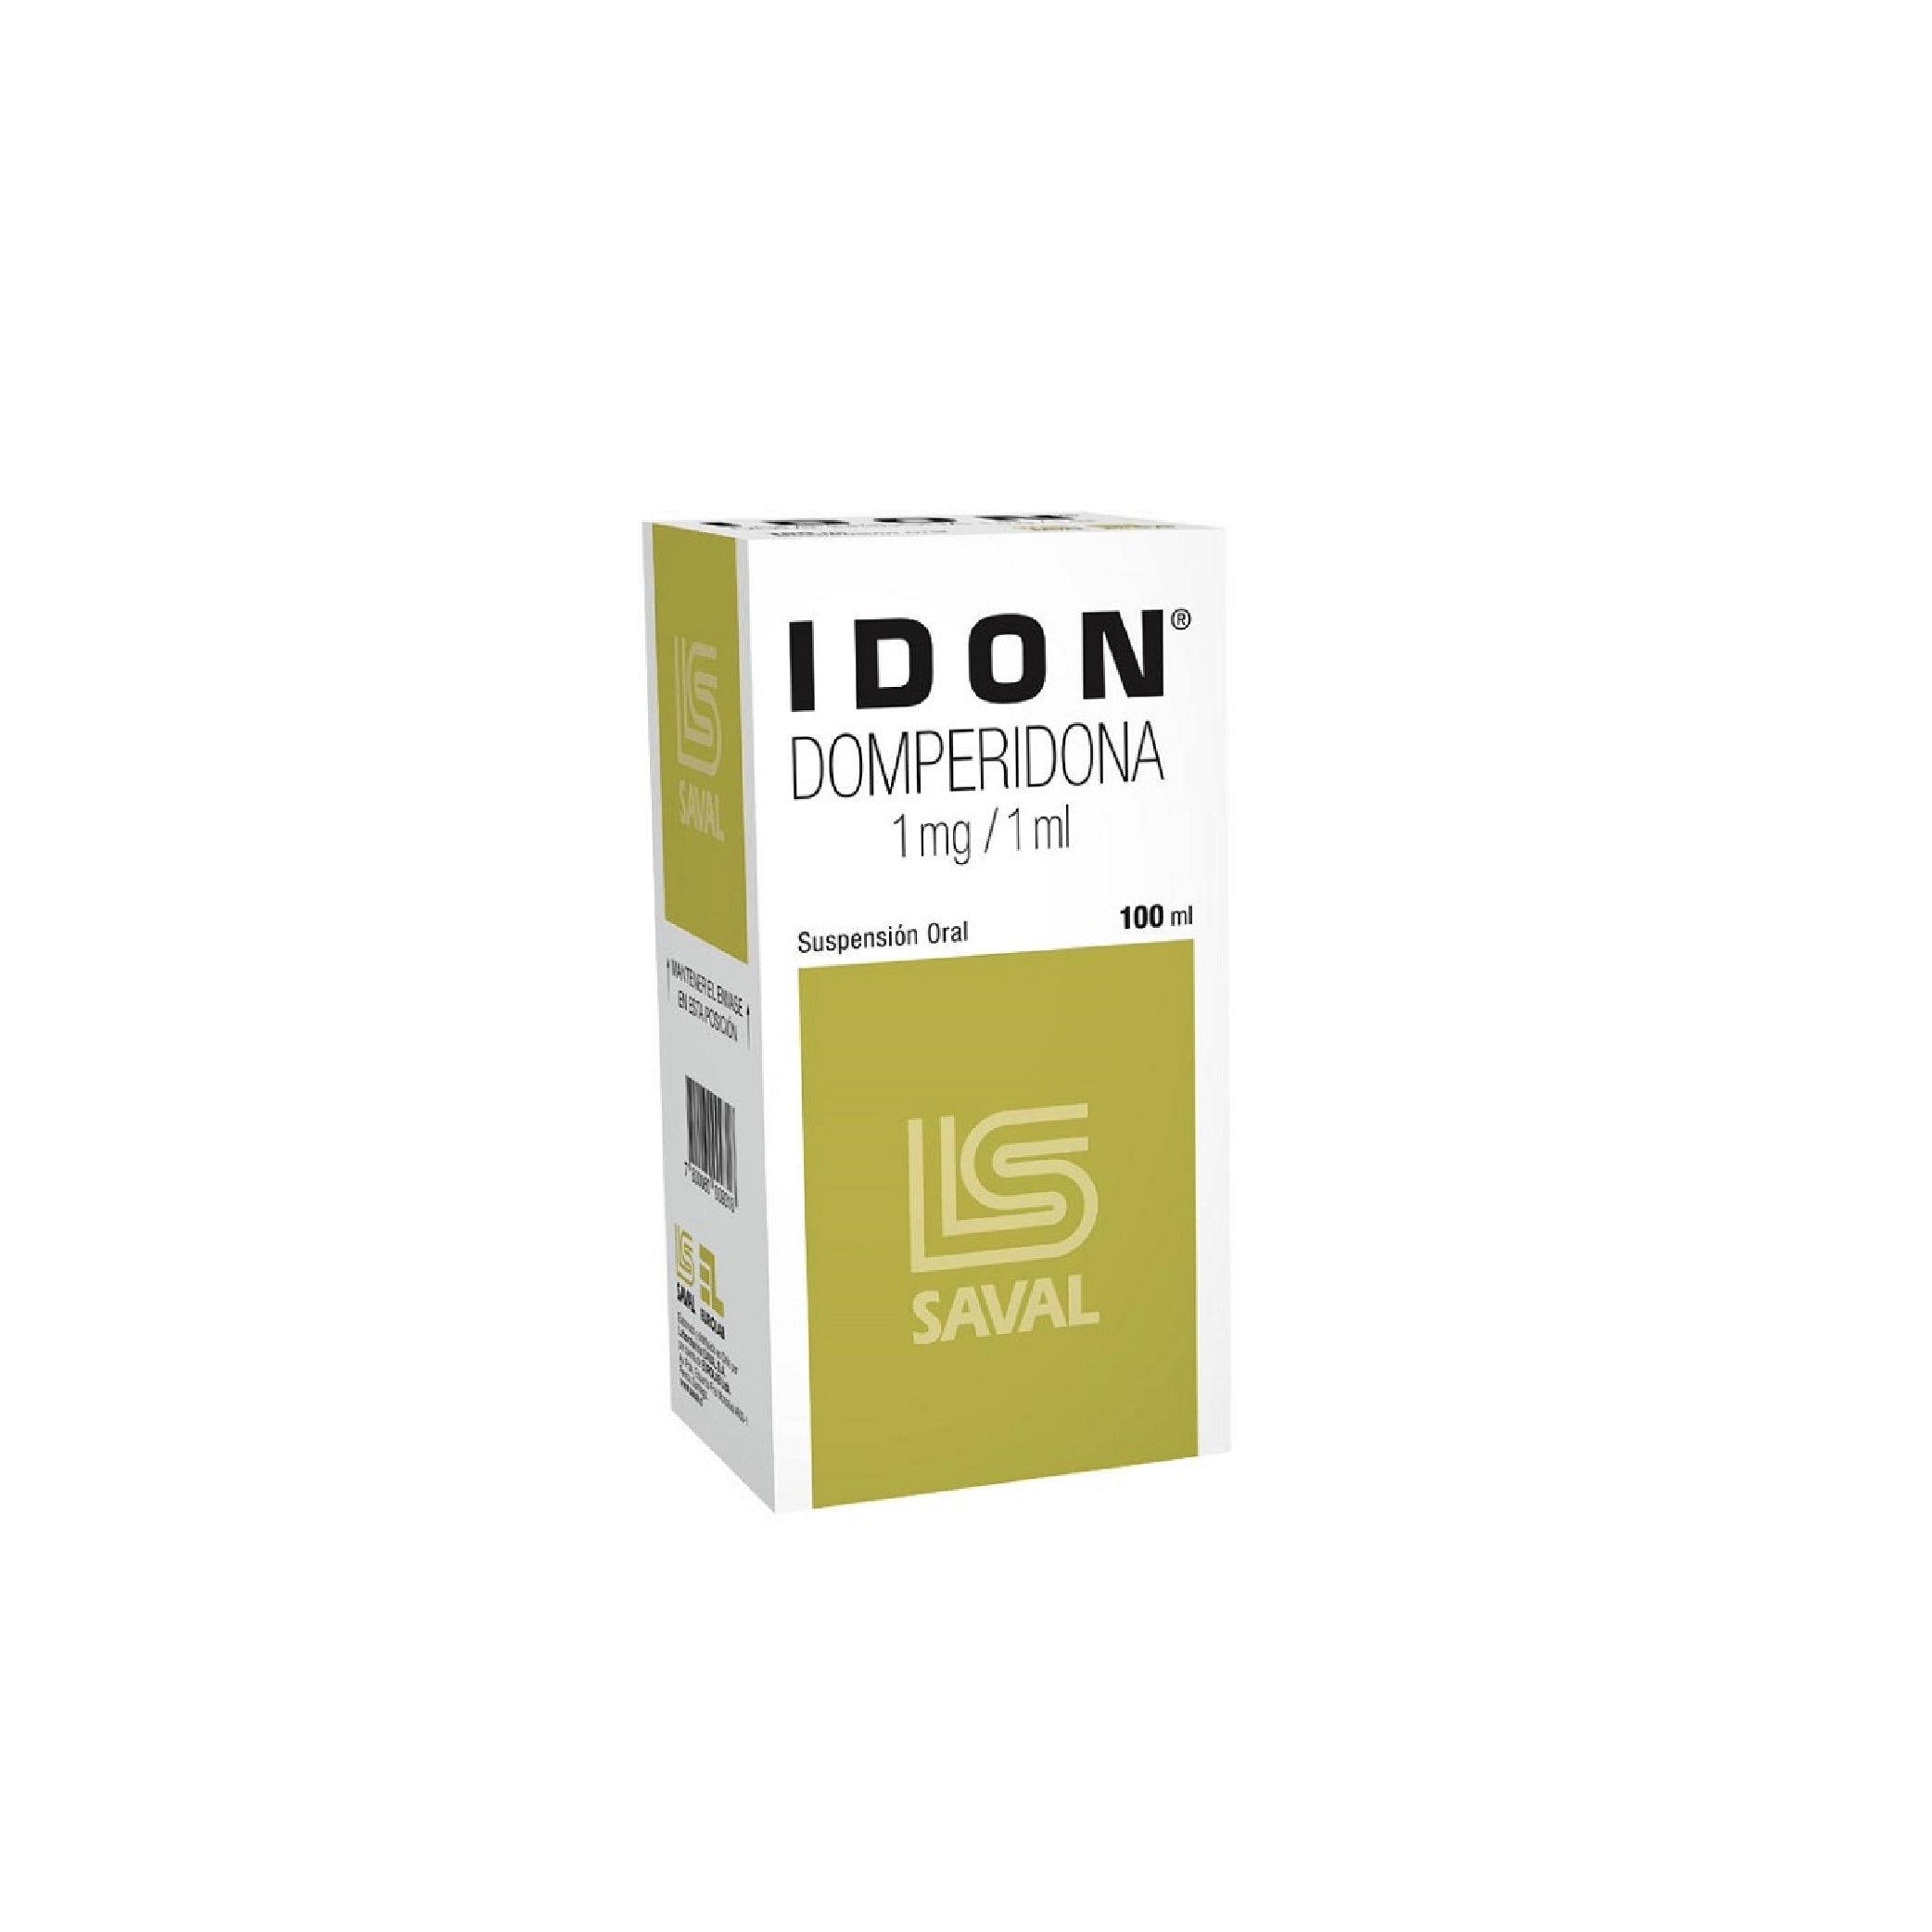 IDON Ped. 5mg /5ml Oral Susp. x 100ml